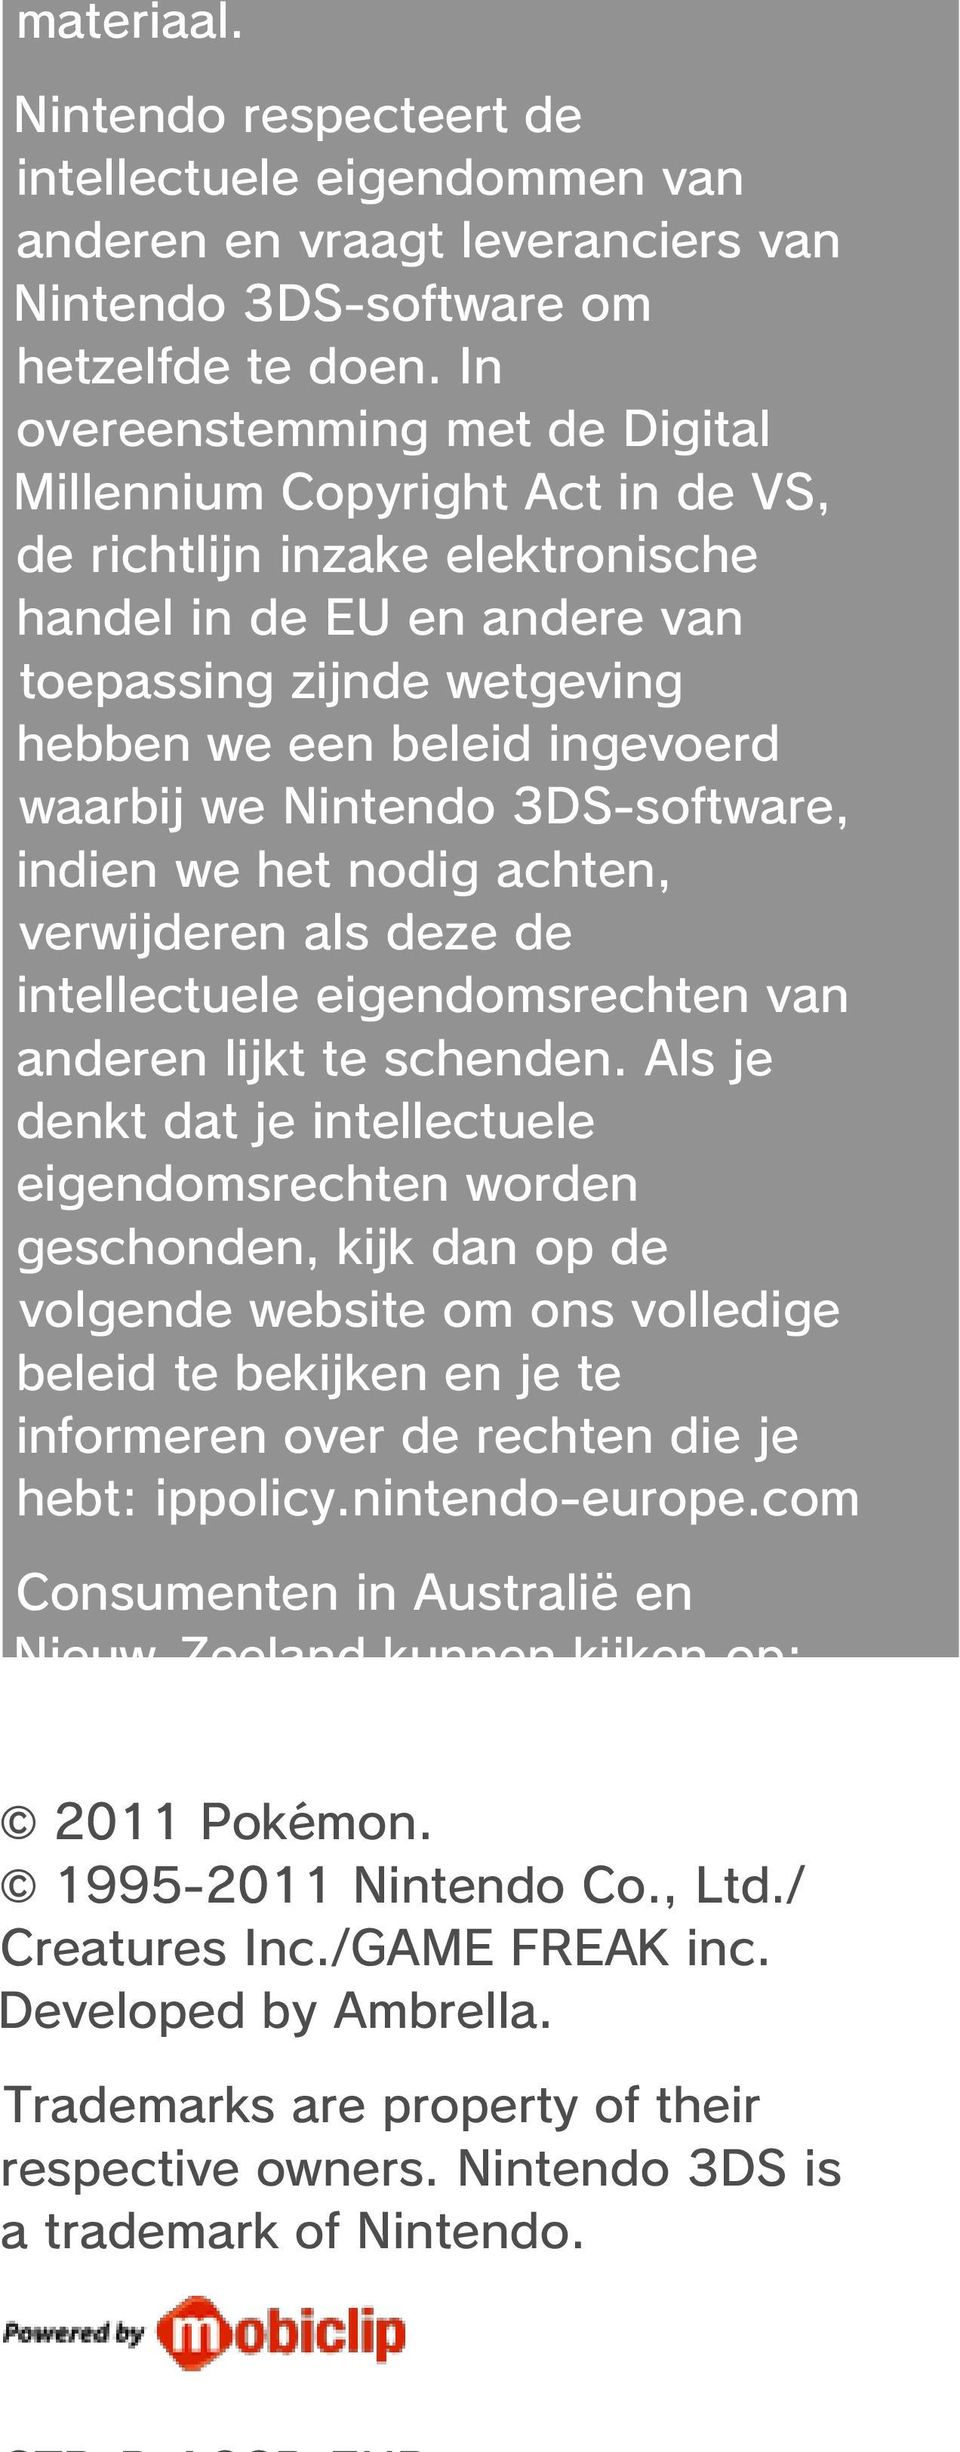 we Nintendo 3DS-software, indien we het nodig achten, verwijderen als deze de intellectuele eigendomsrechten van anderen lijkt te schenden.